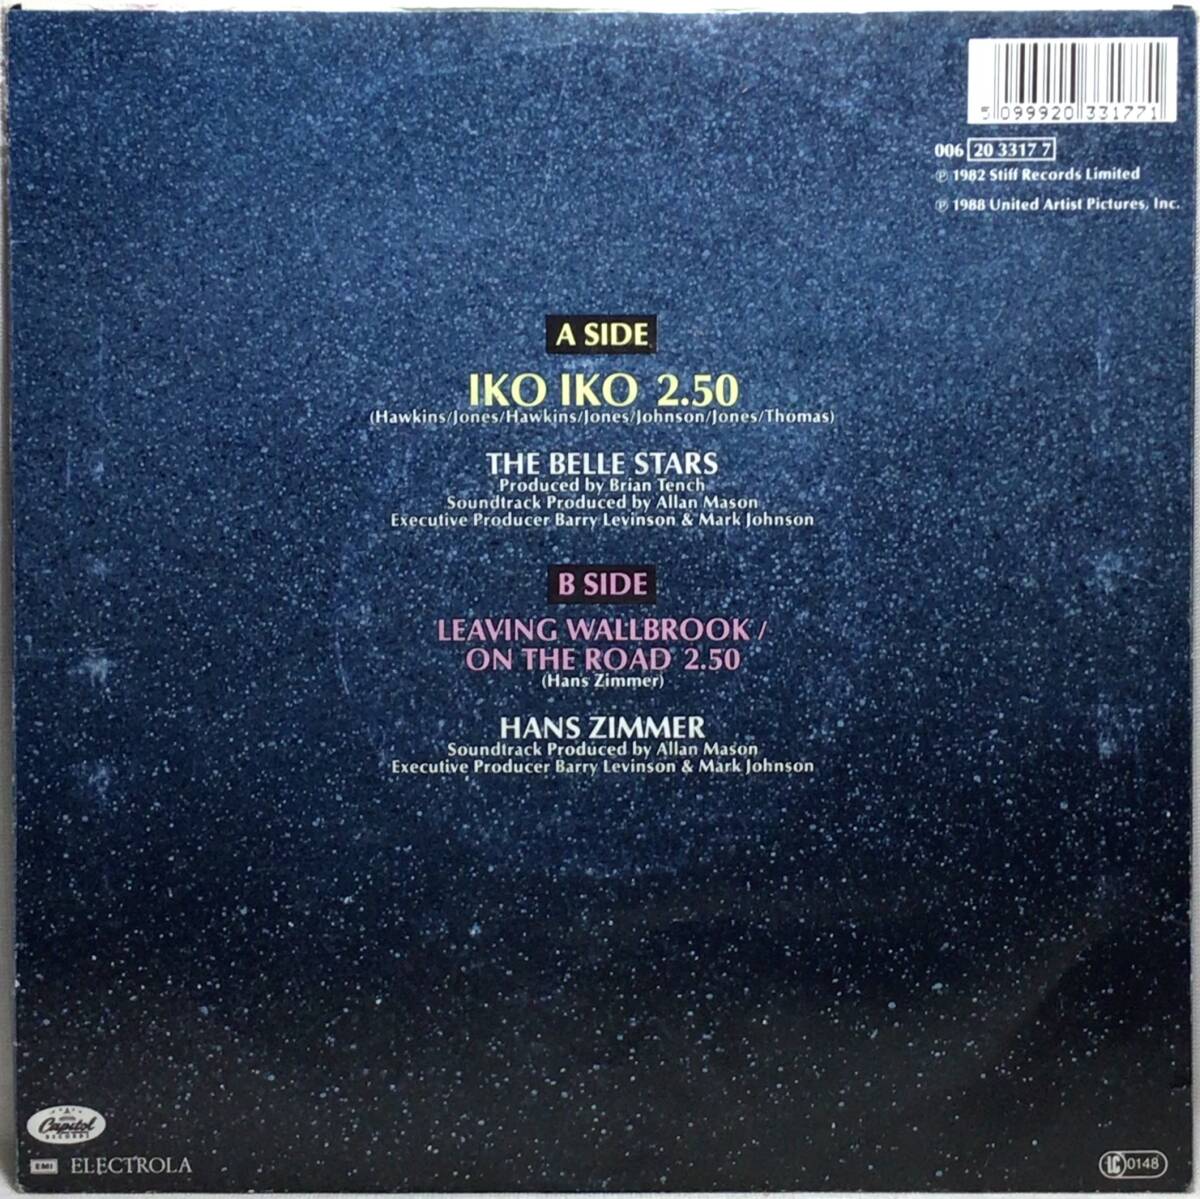 【欧7】 映画レインマン サントラ曲 THE BELLE STARS / IKO IKO / 1988 EEC盤 7インチシングルレコード EP 45 トム・クルーズ 試聴済の画像2